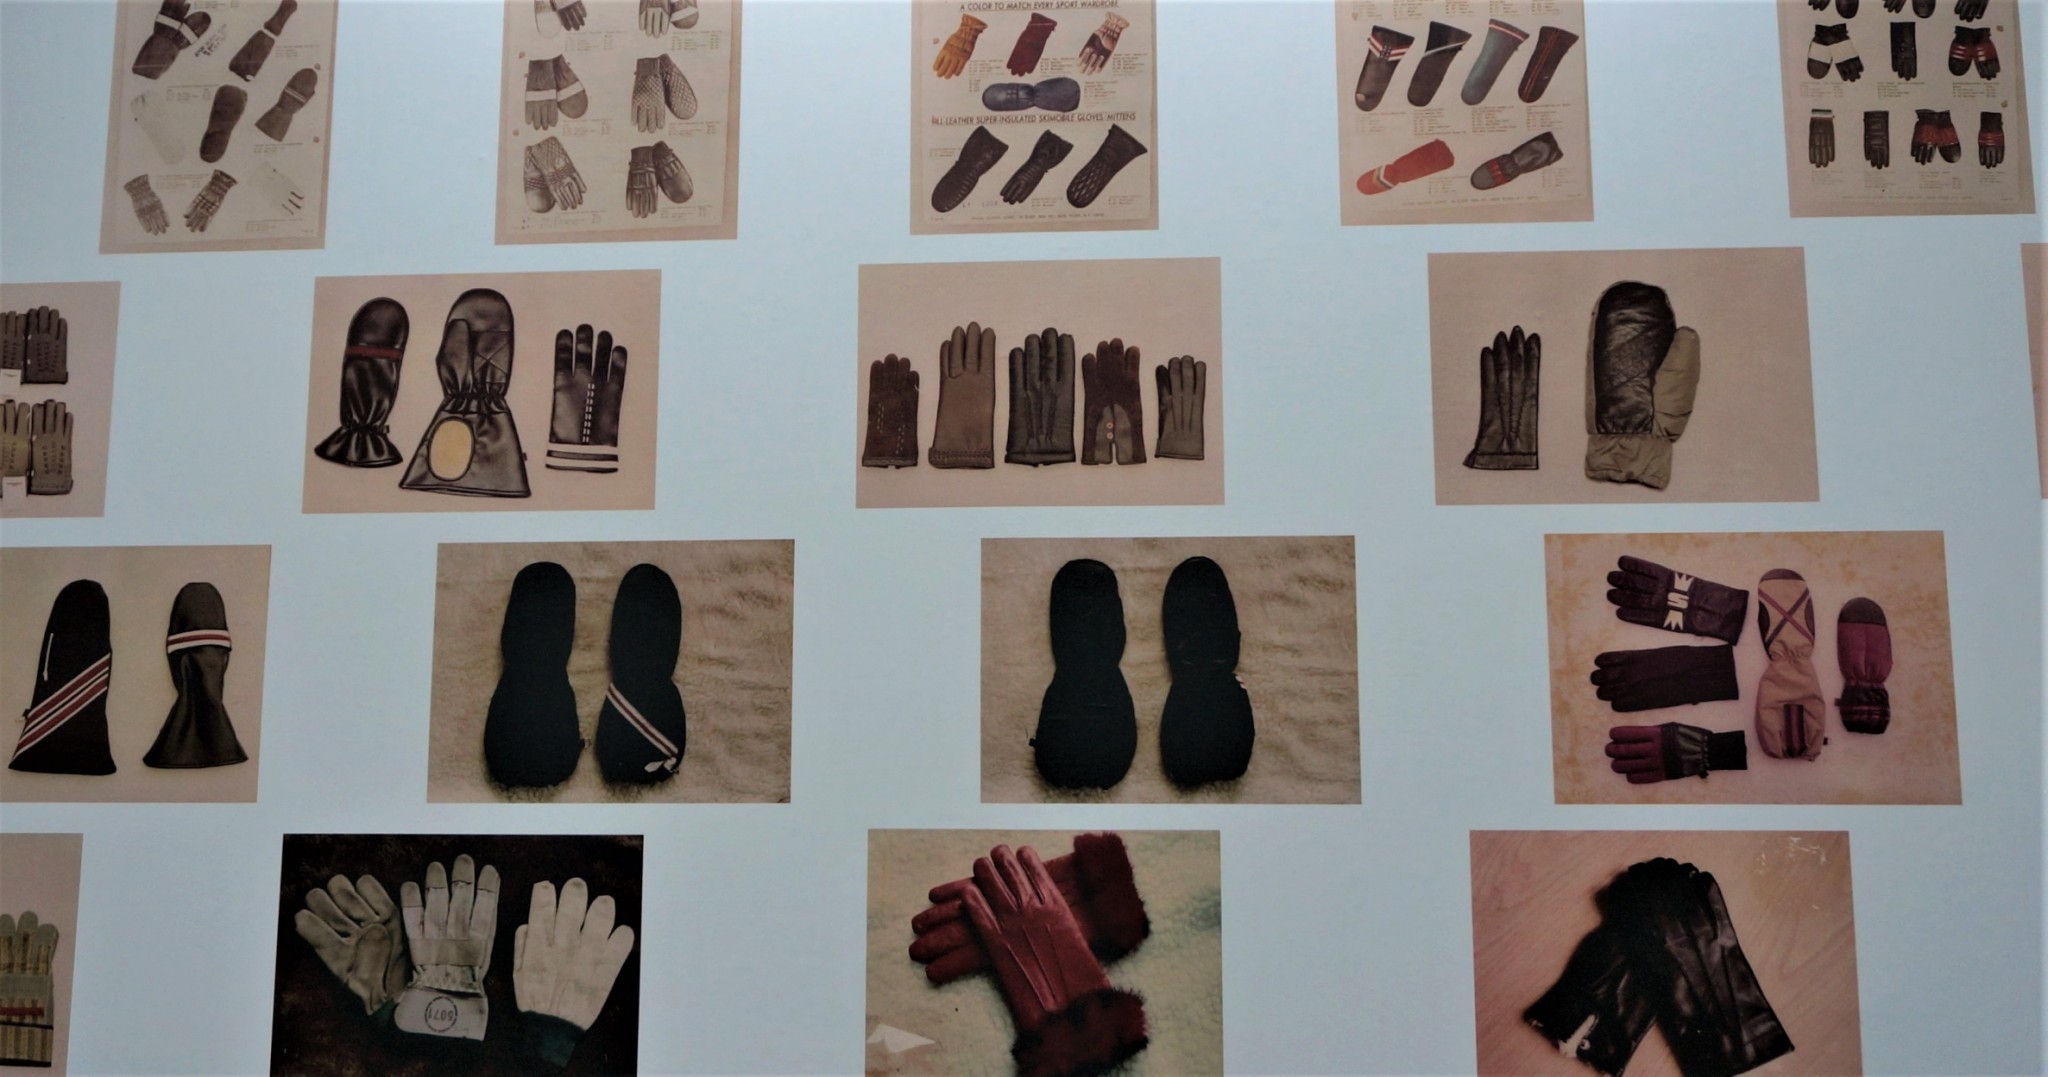 牆上掛有許多早期生產的手套樣式圖片